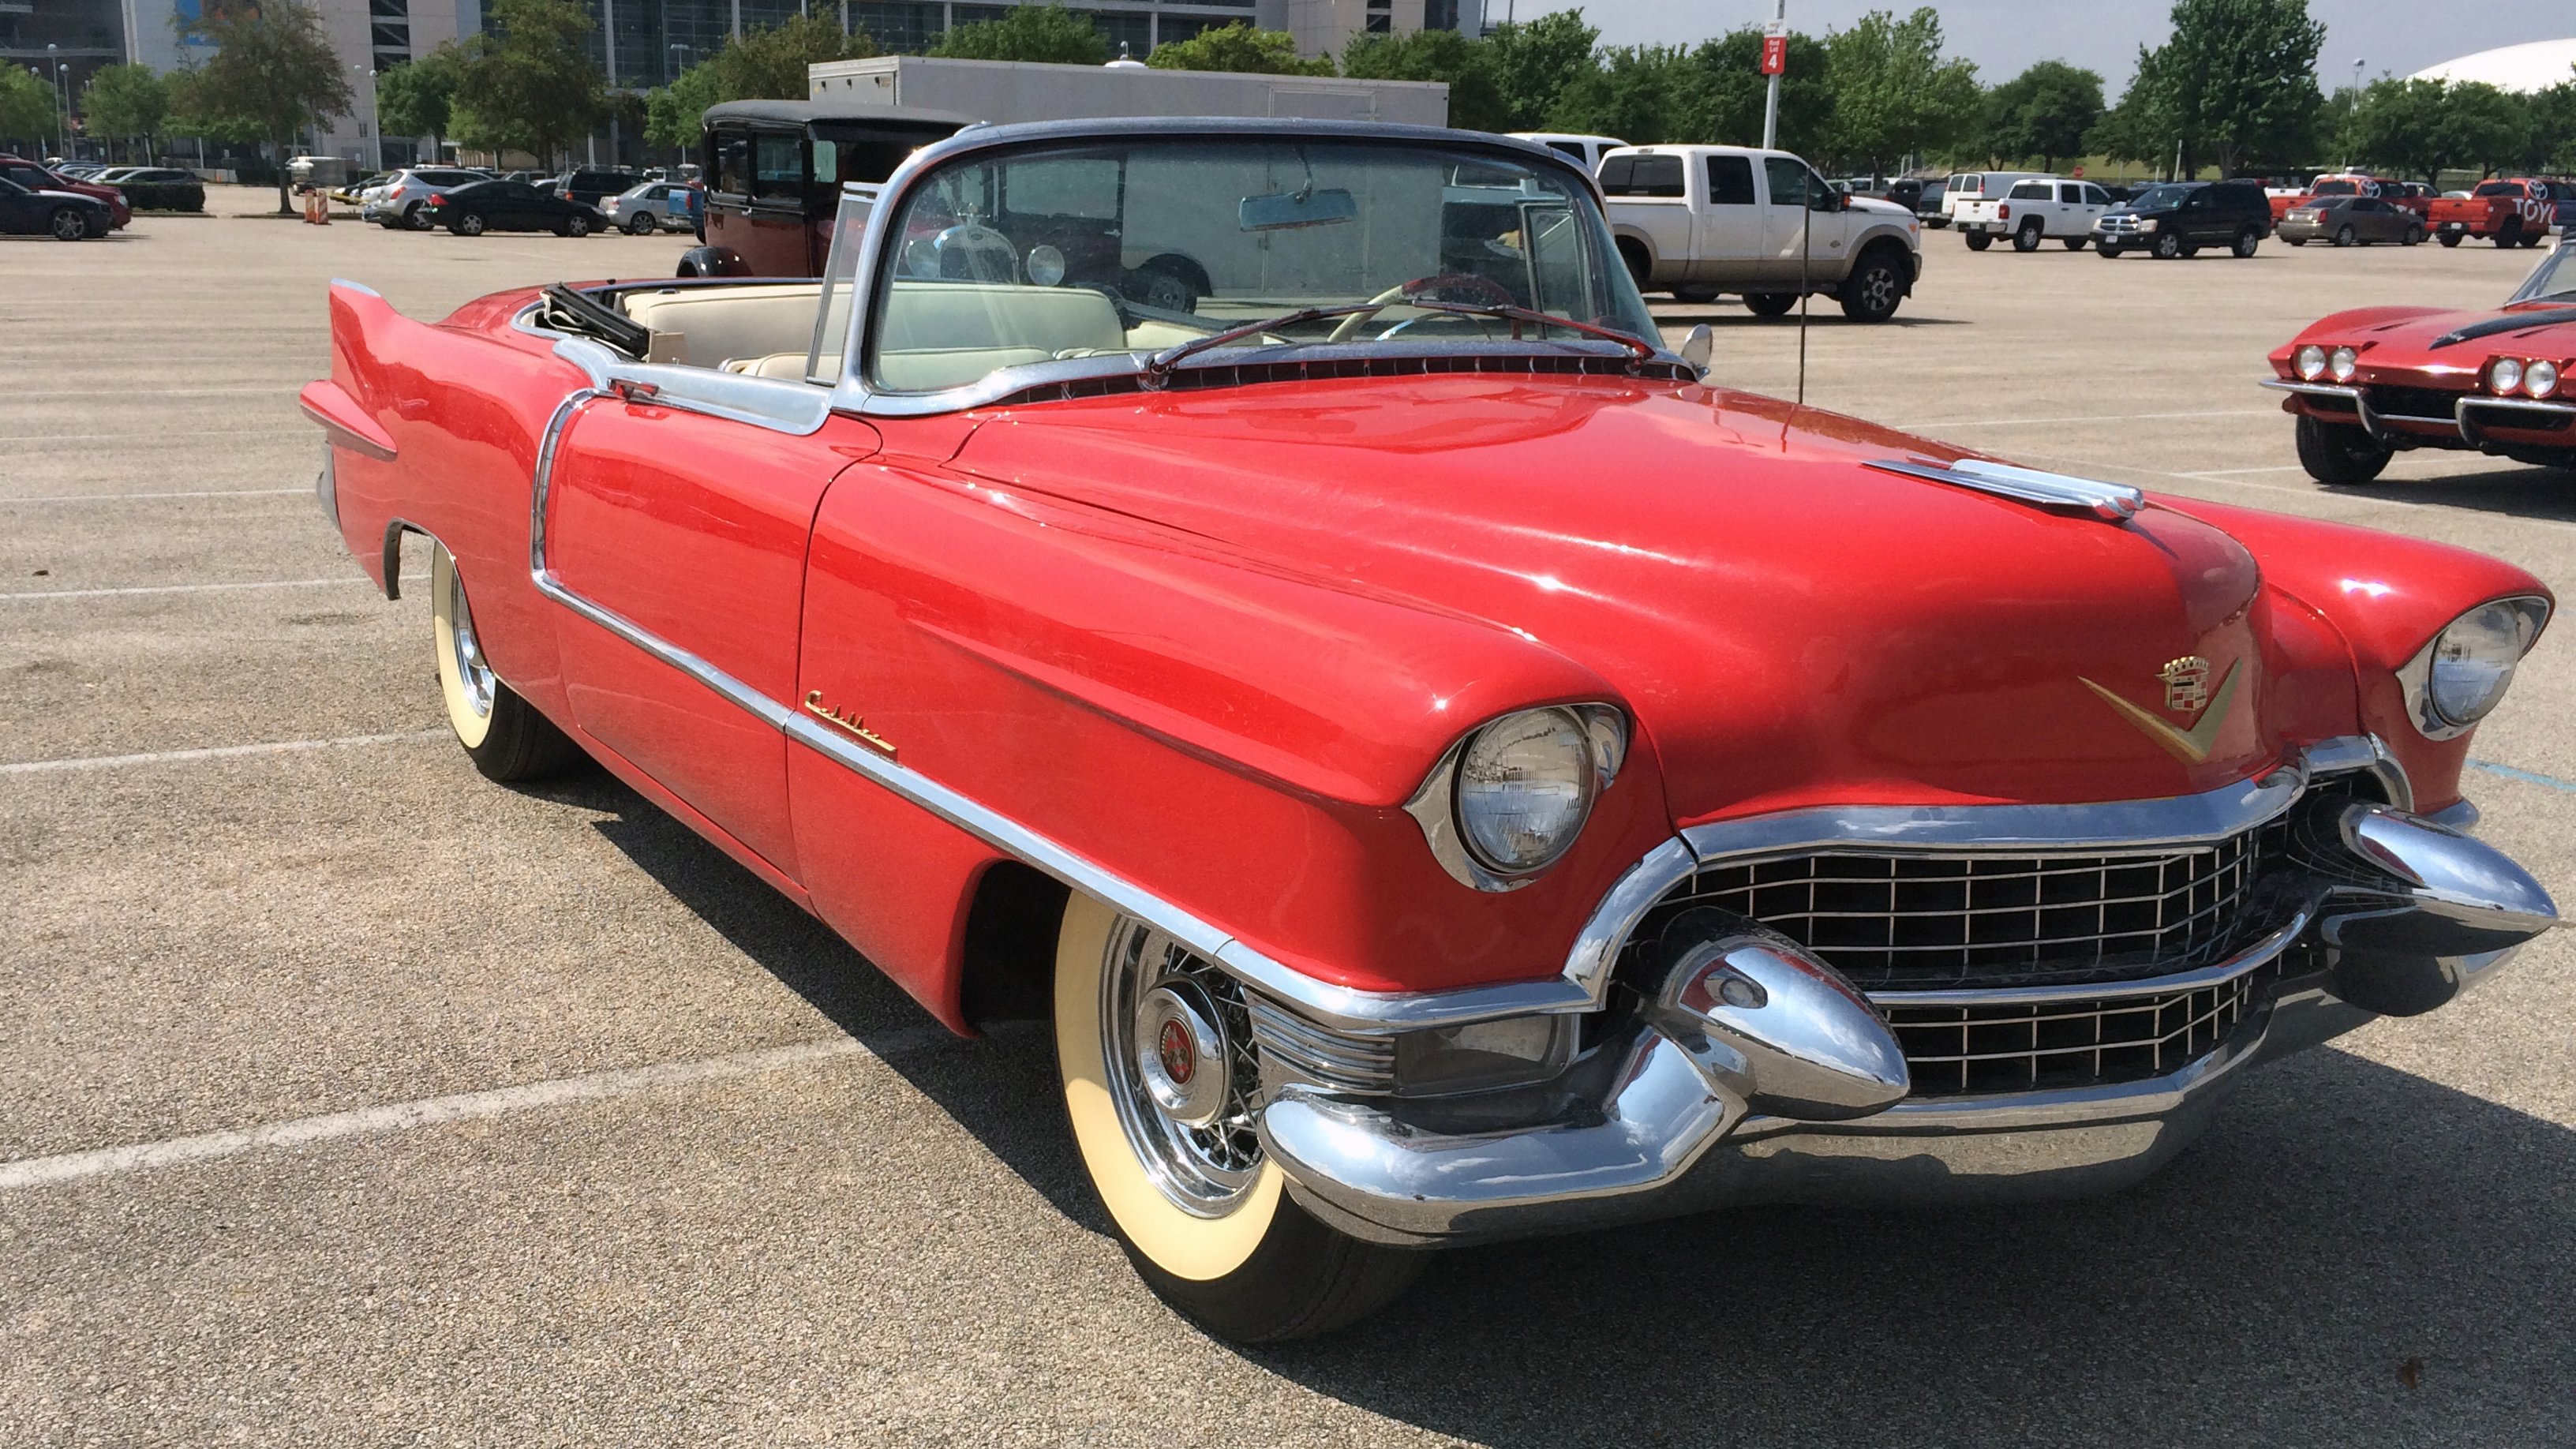 1955, Cadillac, Eldorado, Convertible, Classic, Old, Vintage, Retro